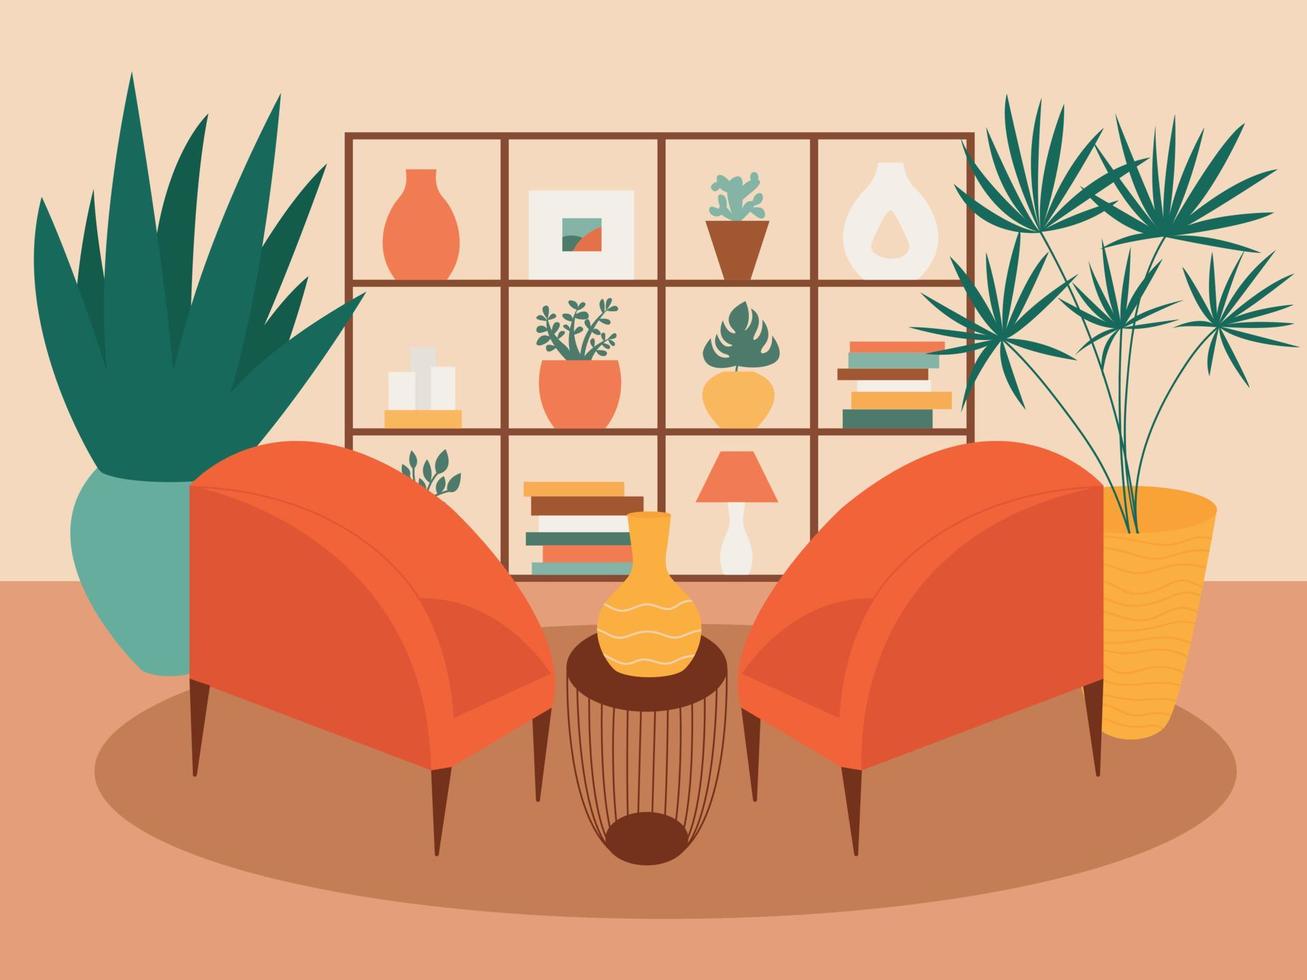 sala de estar de estilo plano con sillones y plantas ilustración vectorial. estante grande con decoración casera en la sala de estar vector